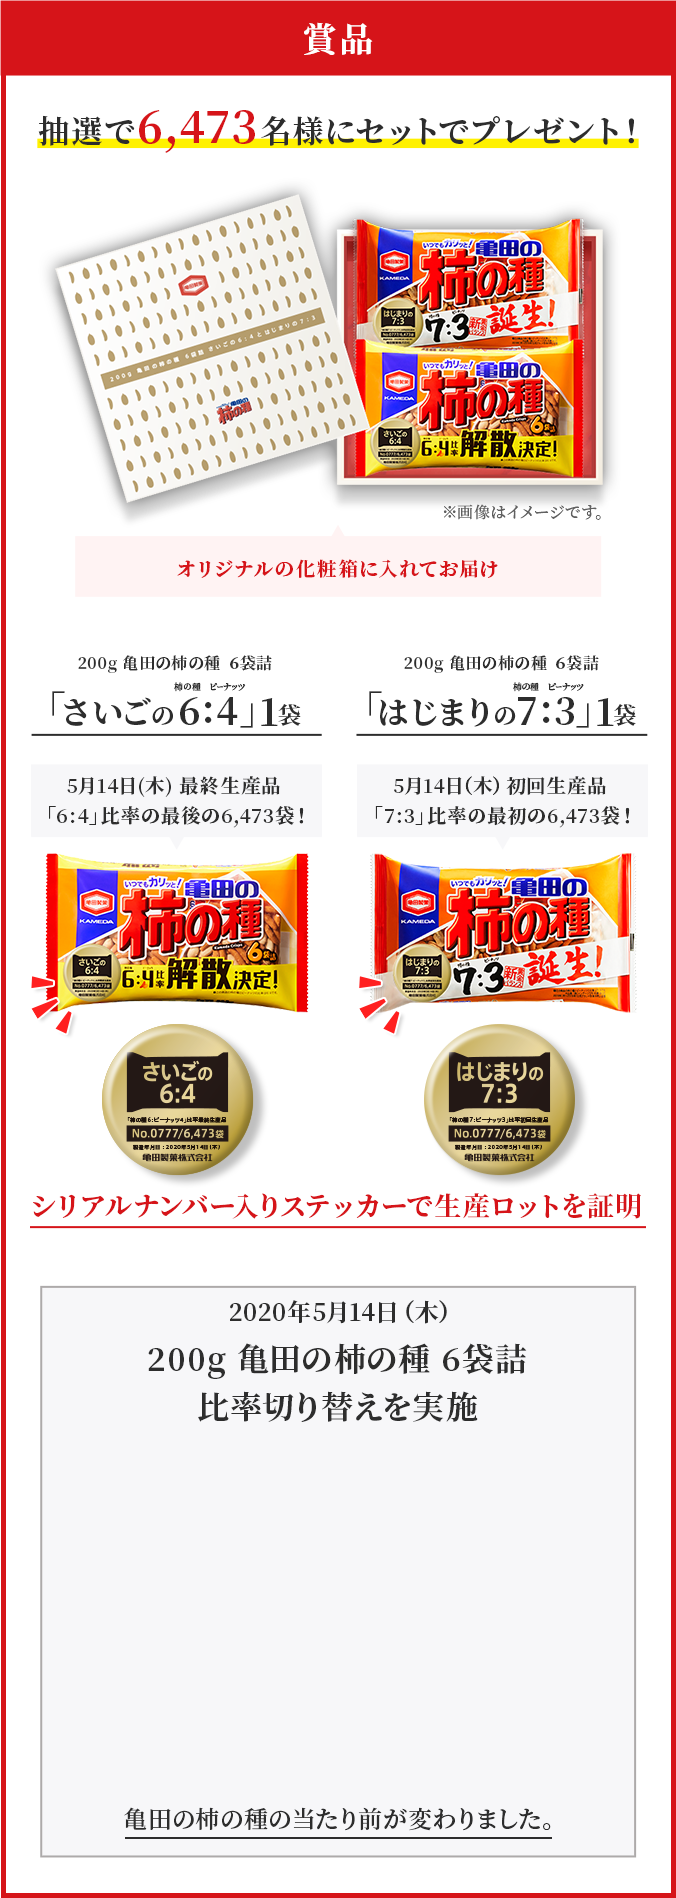 亀田の柿の種 新黄金バランス7 3誕生 亀田製菓株式会社